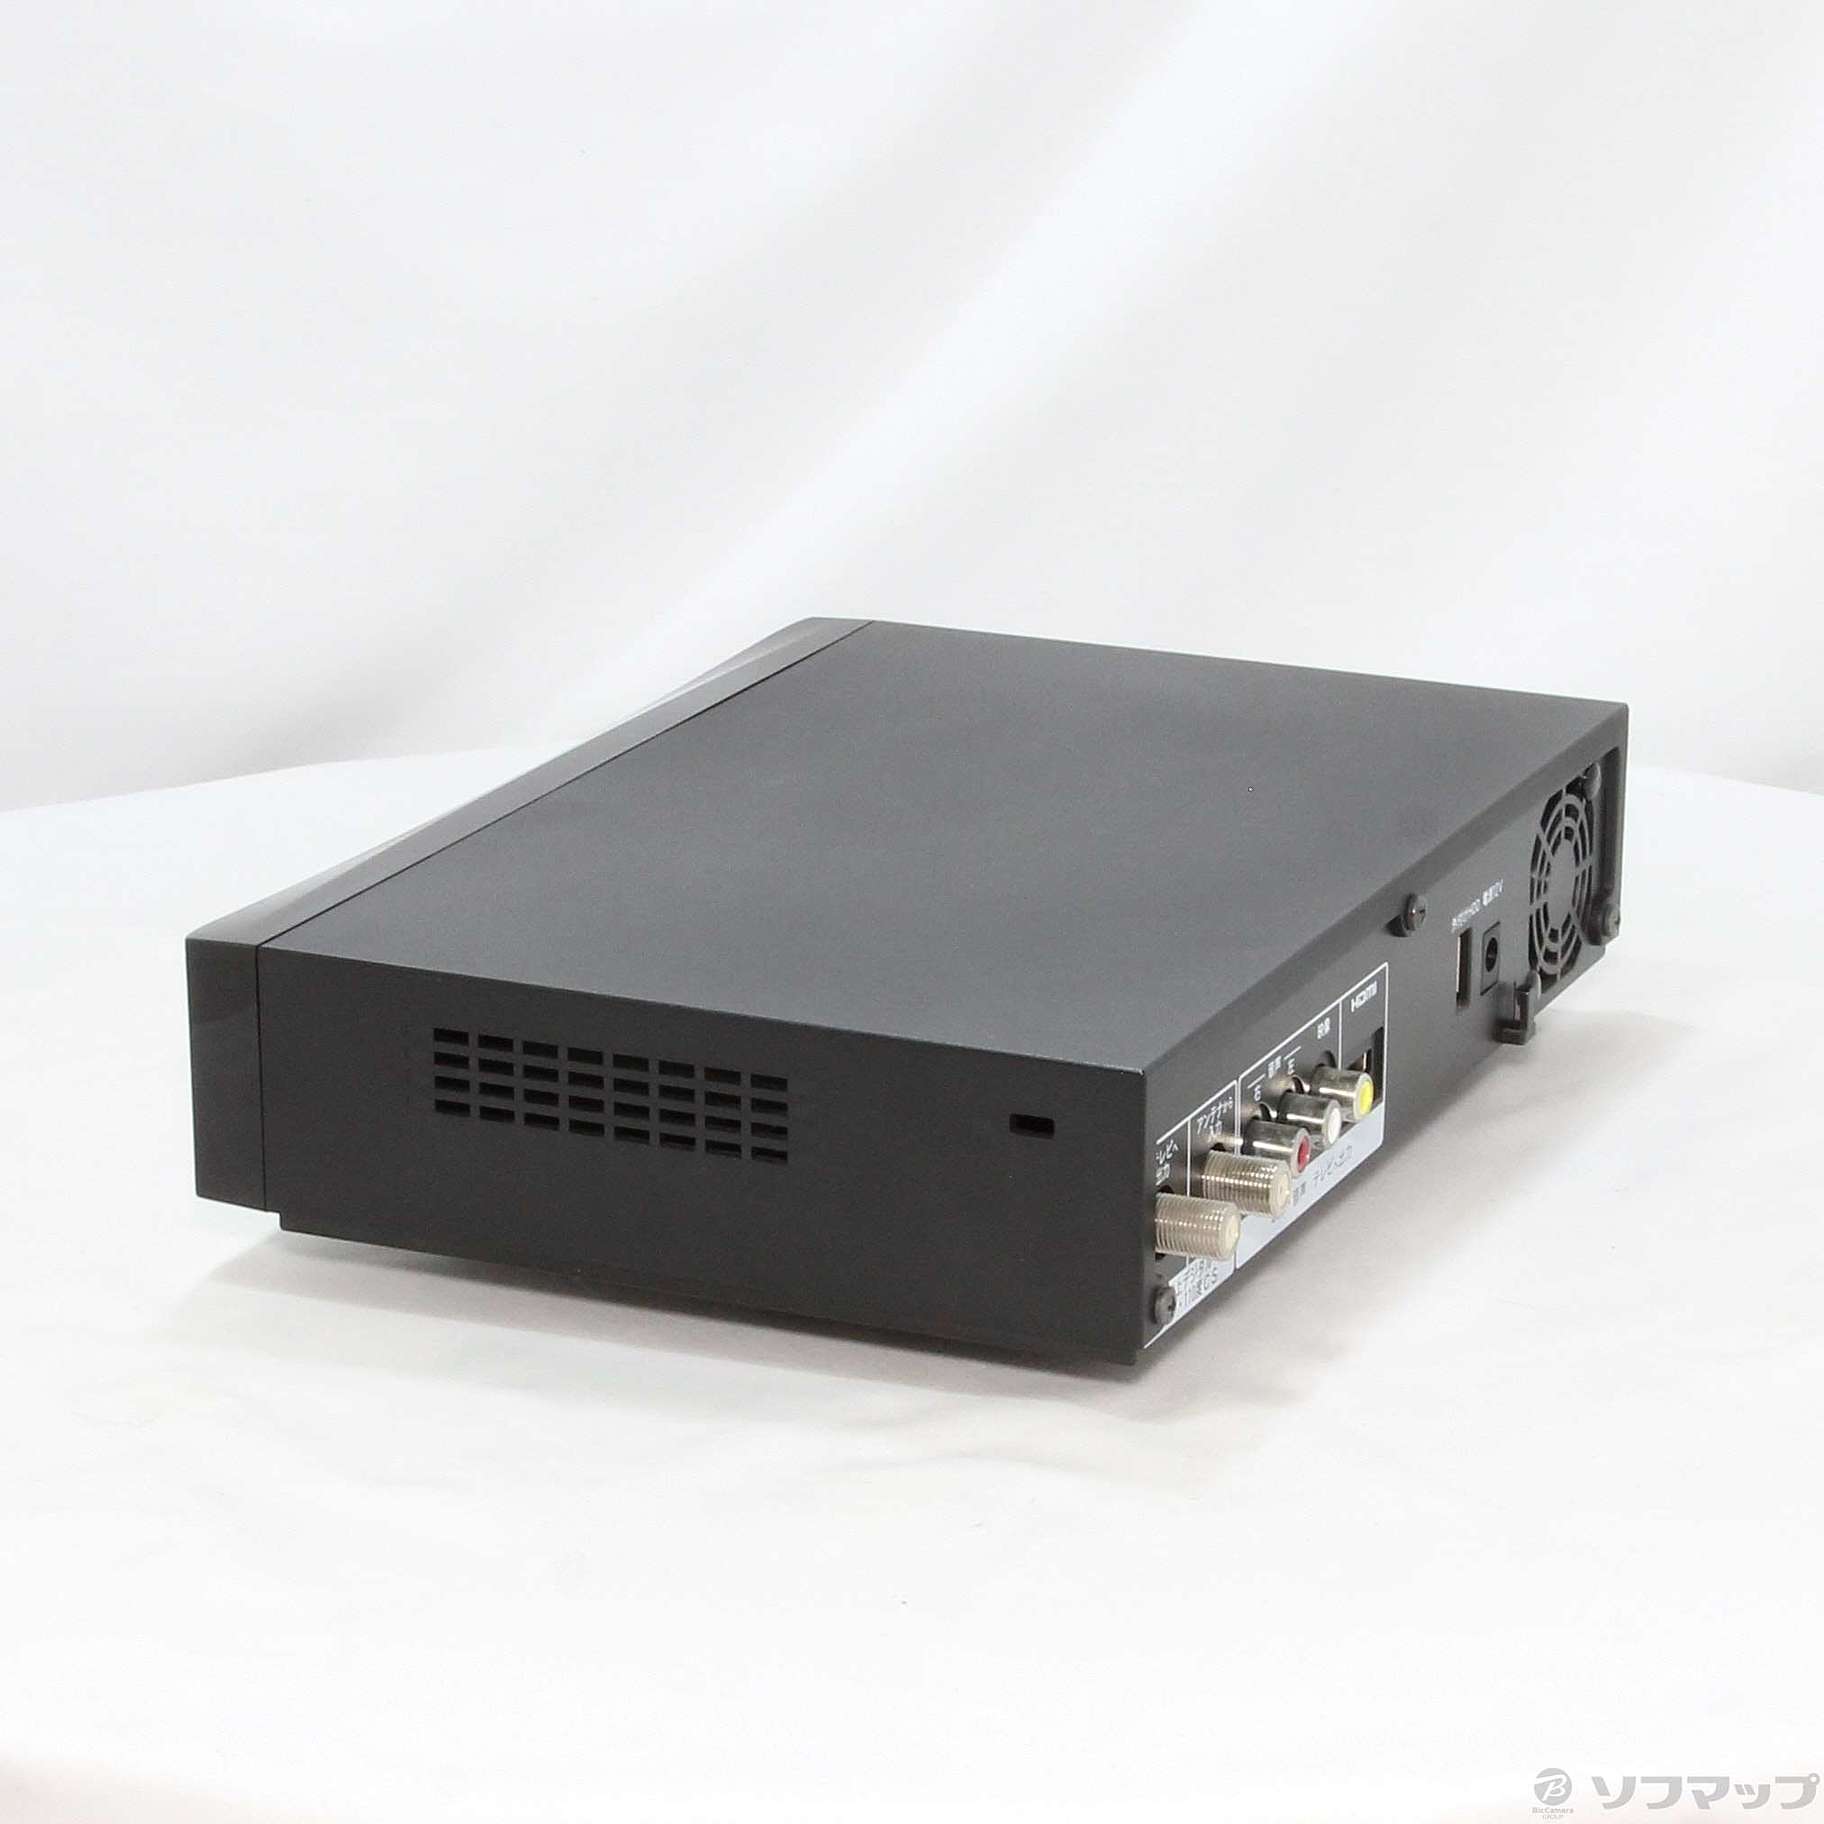 新素材新作 BUFFALO Wチューナー HDDレコーダー 1TB DVR-W1/1.0T 